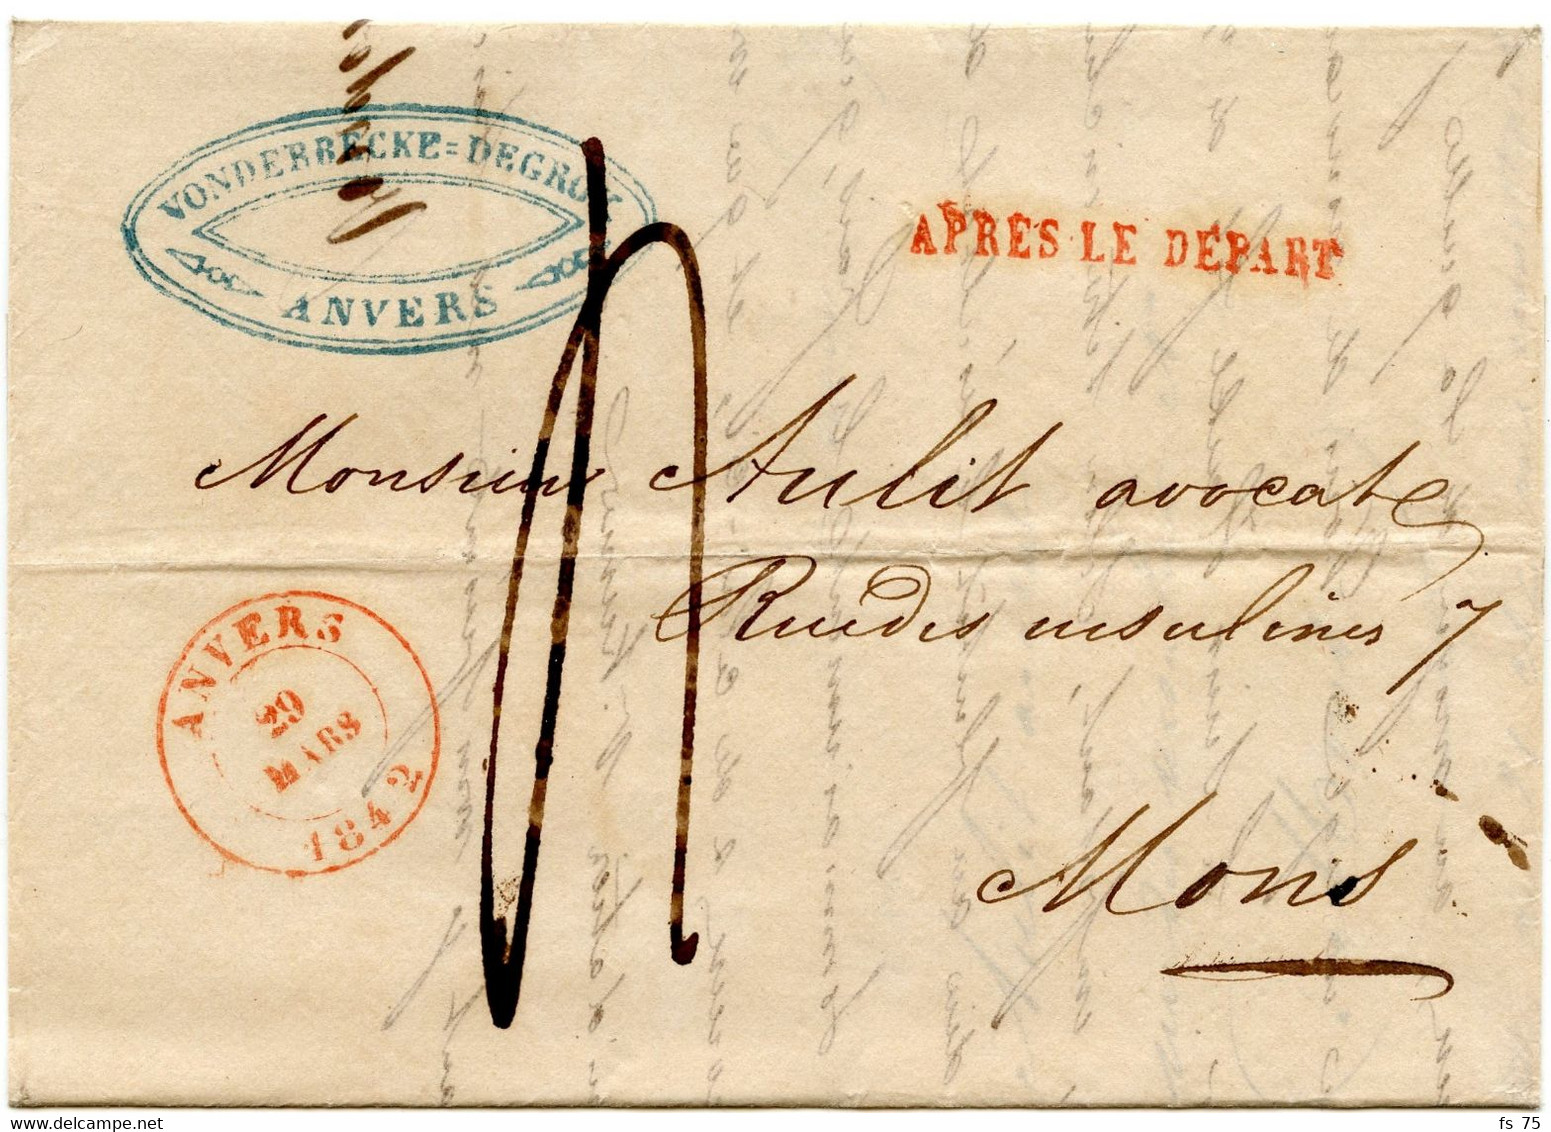 BELGIQUE - ANVERS + APRES LE DEPART SUR LETTRE AVEC CORRESPONDANCE, 1842 - 1830-1849 (Belgica Independiente)